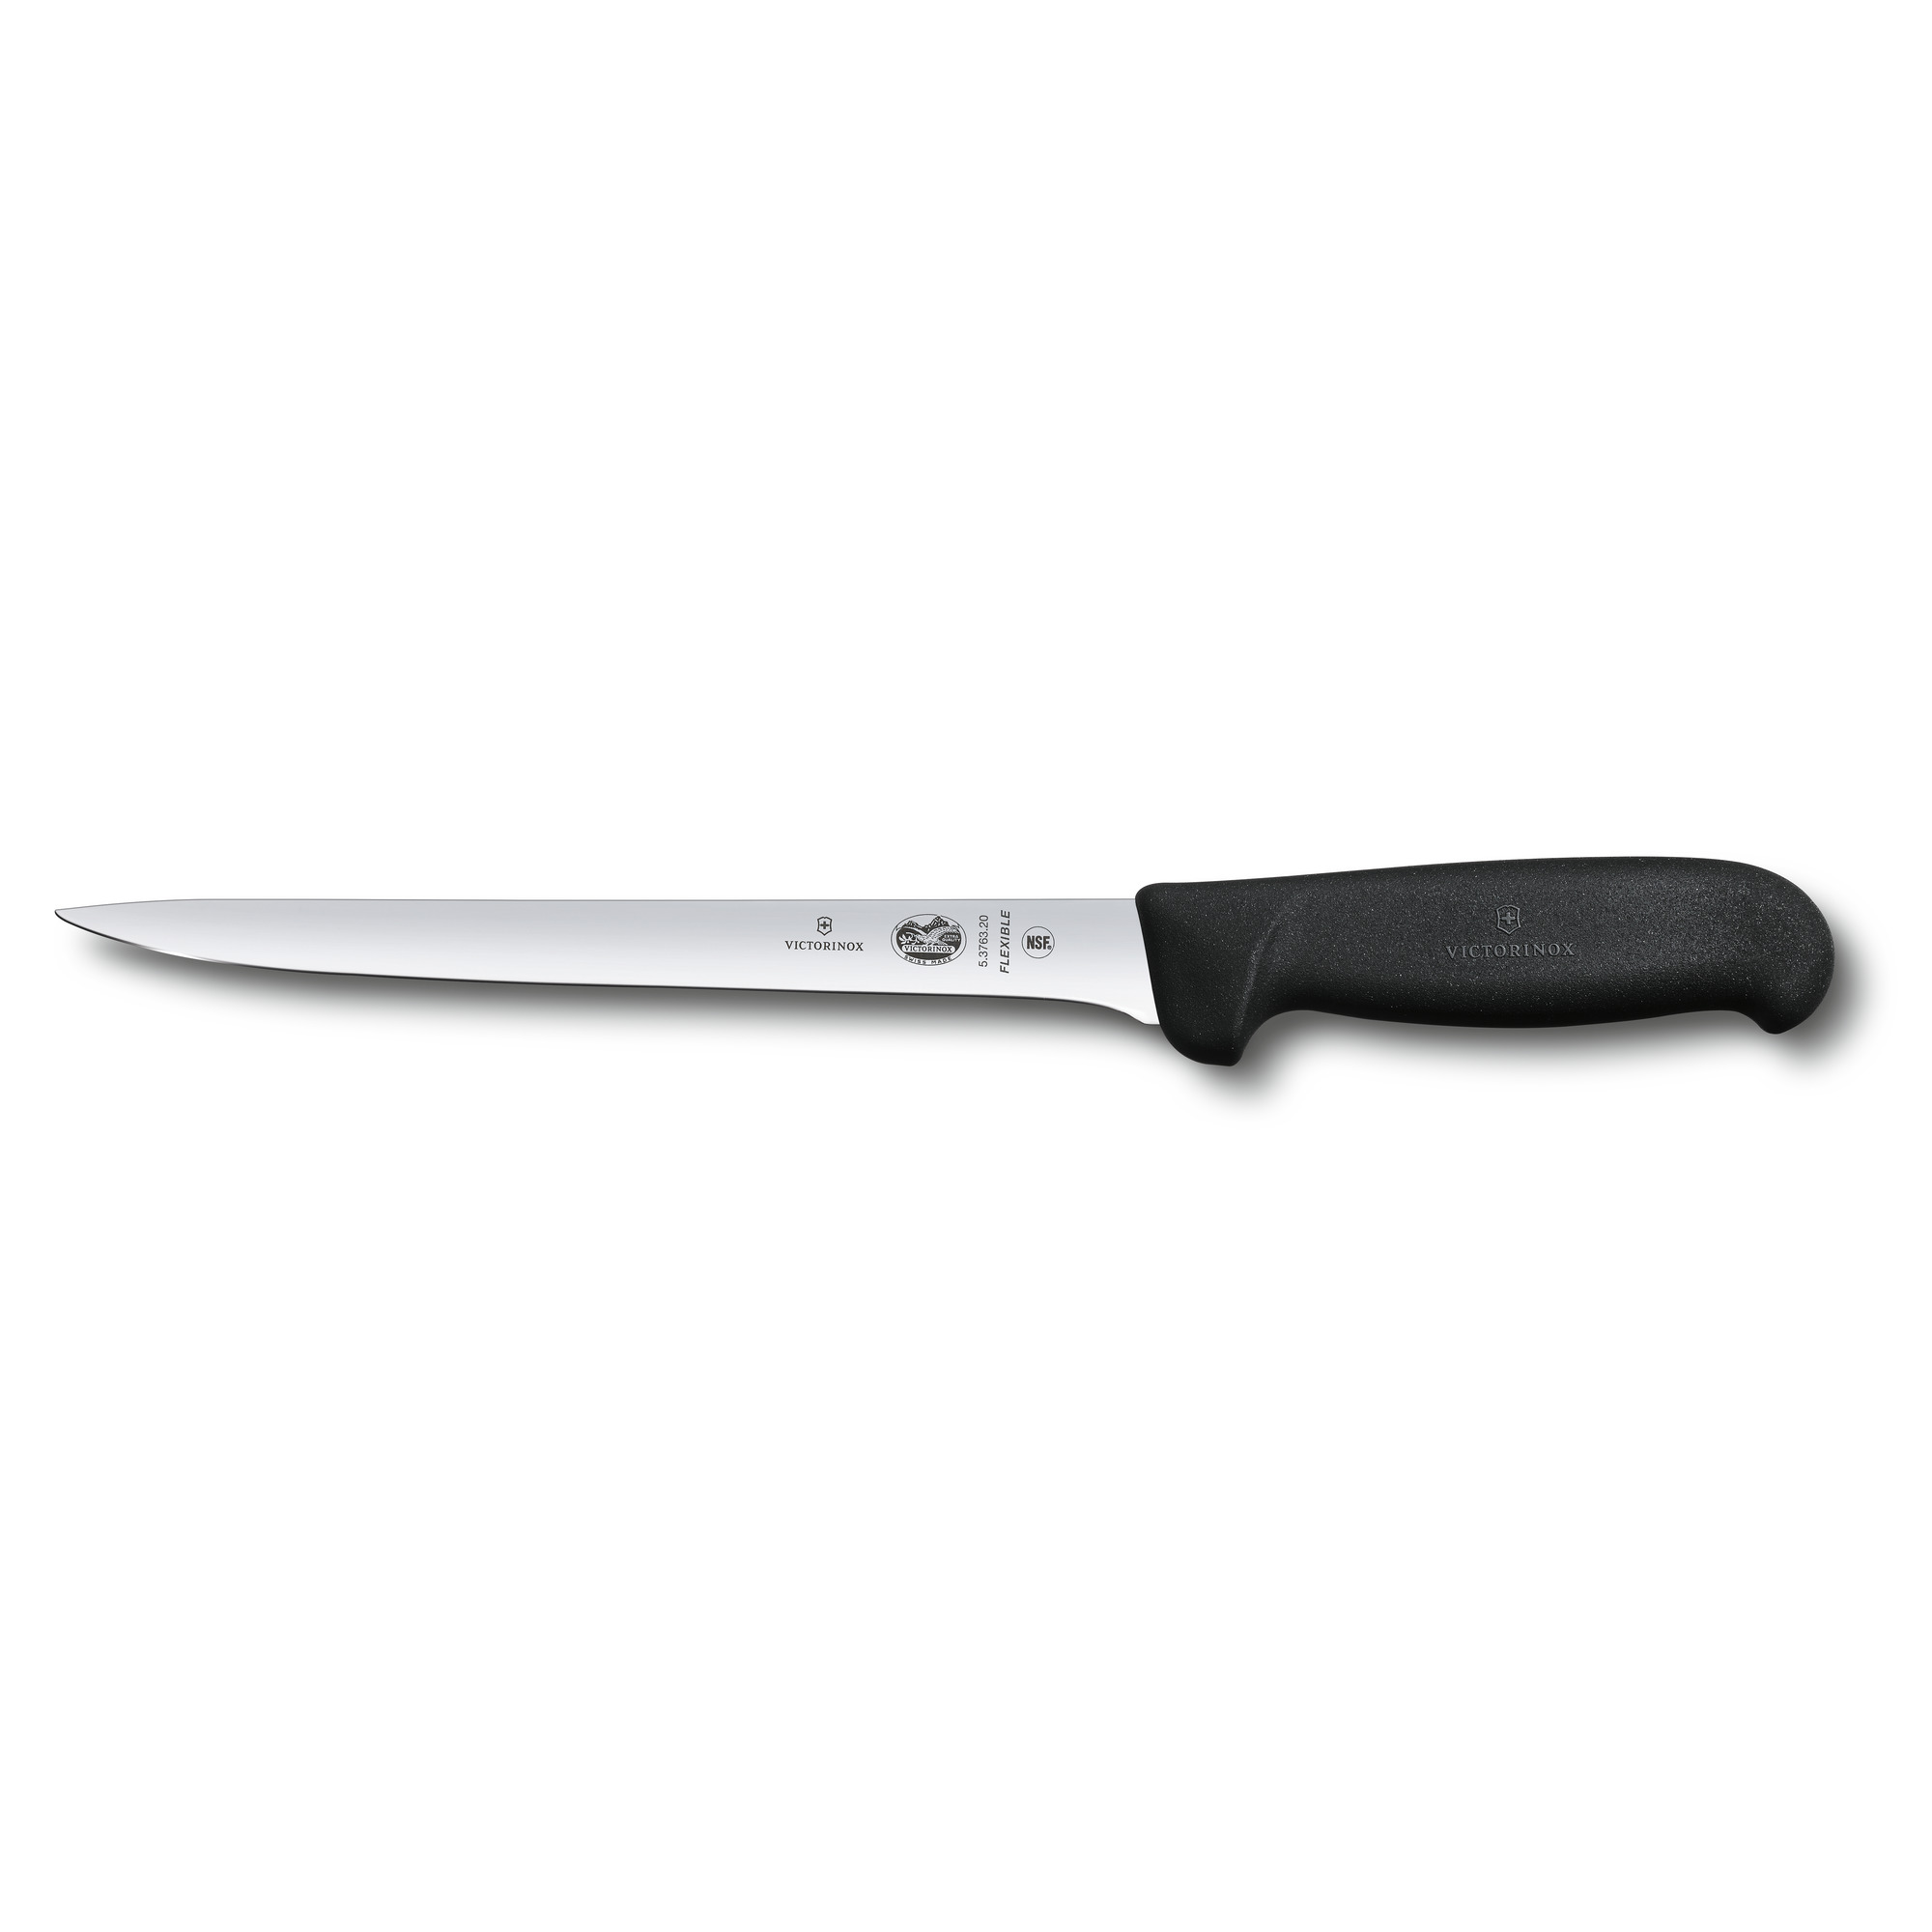 Нож филейный Fibrox 20 см VICTORINOX 5.3763.20